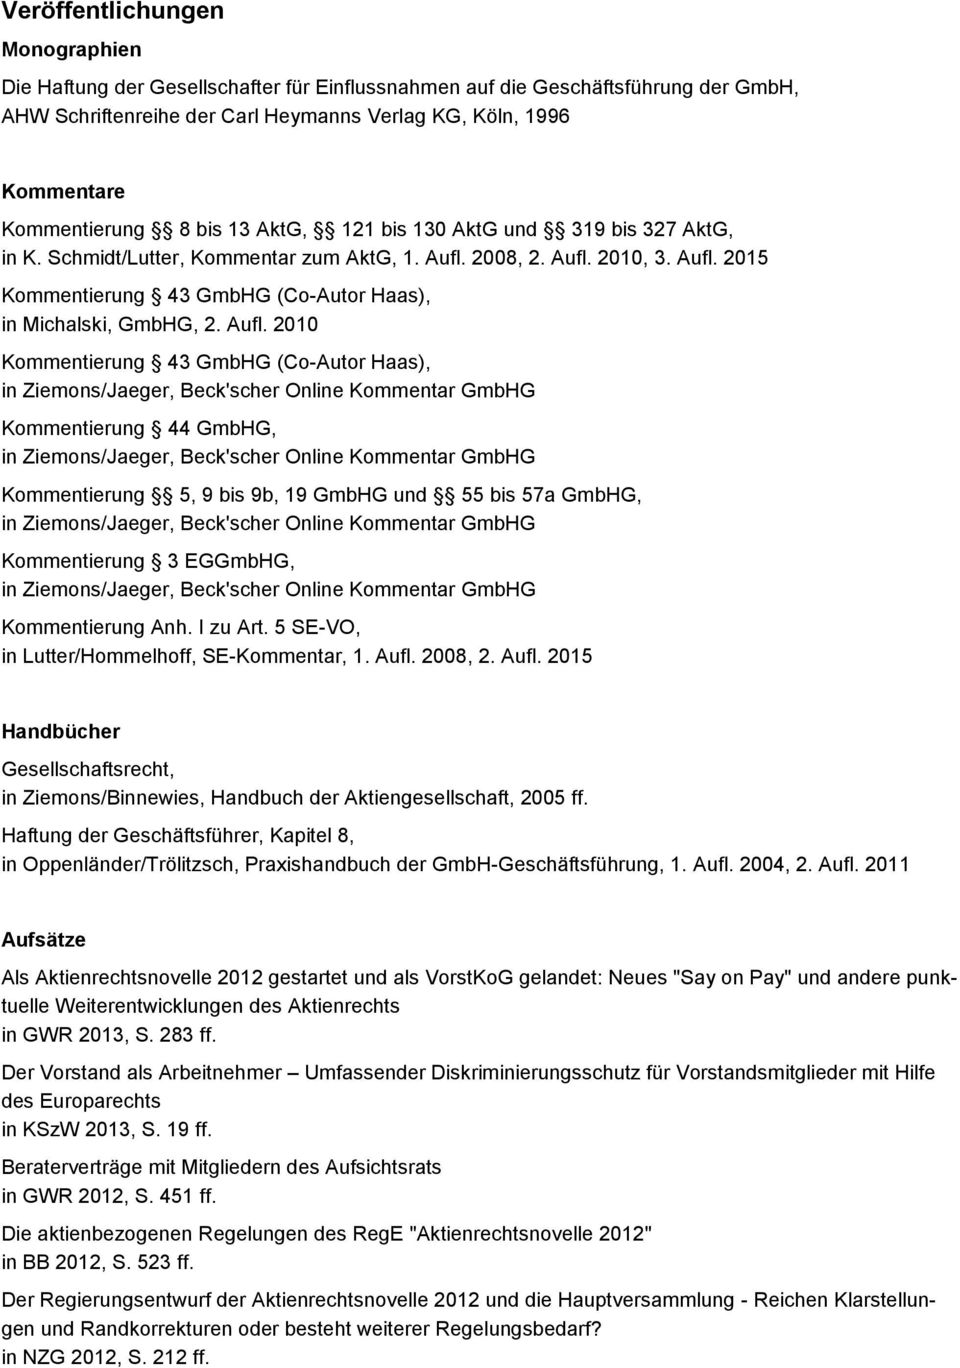 Aufl. 2010 Kommentierung 43 GmbHG (Co-Autor Haas), Kommentierung 44 GmbHG, Kommentierung 5, 9 bis 9b, 19 GmbHG und 55 bis 57a GmbHG, Kommentierung 3 EGGmbHG, Kommentierung Anh. I zu Art.